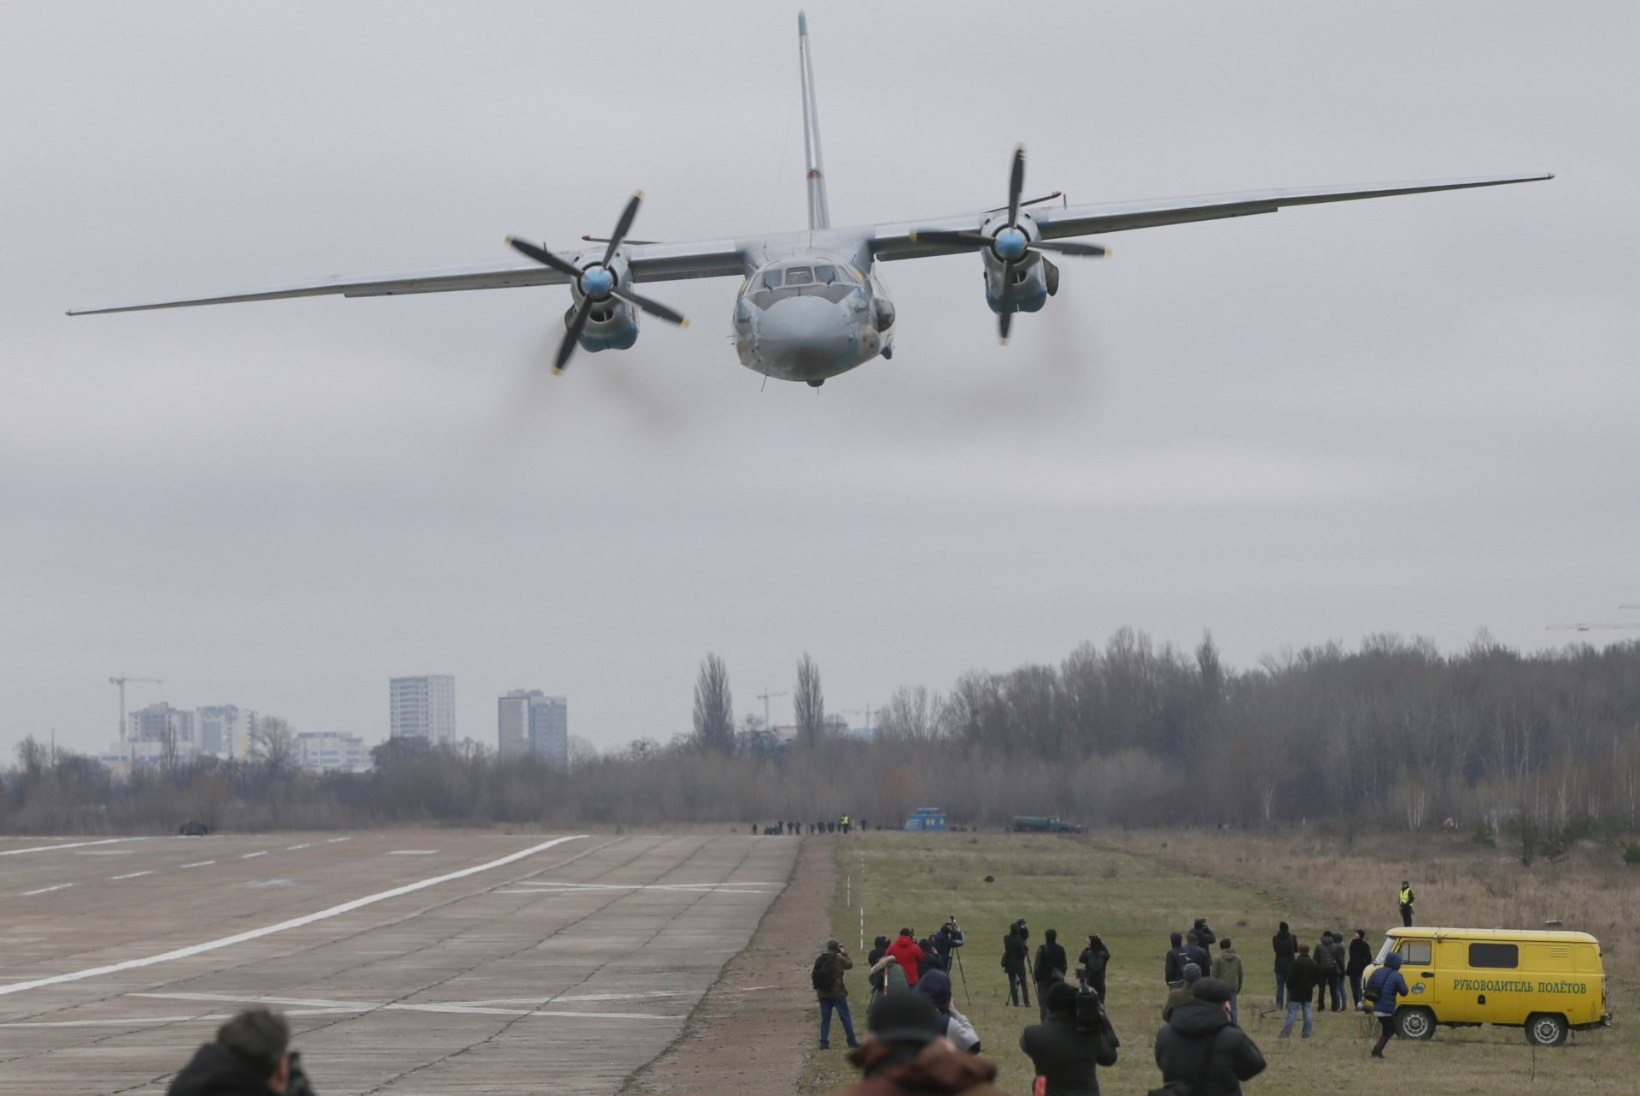 Vene sõjalennuk teeb homme Eesti kohal vaatluslennu